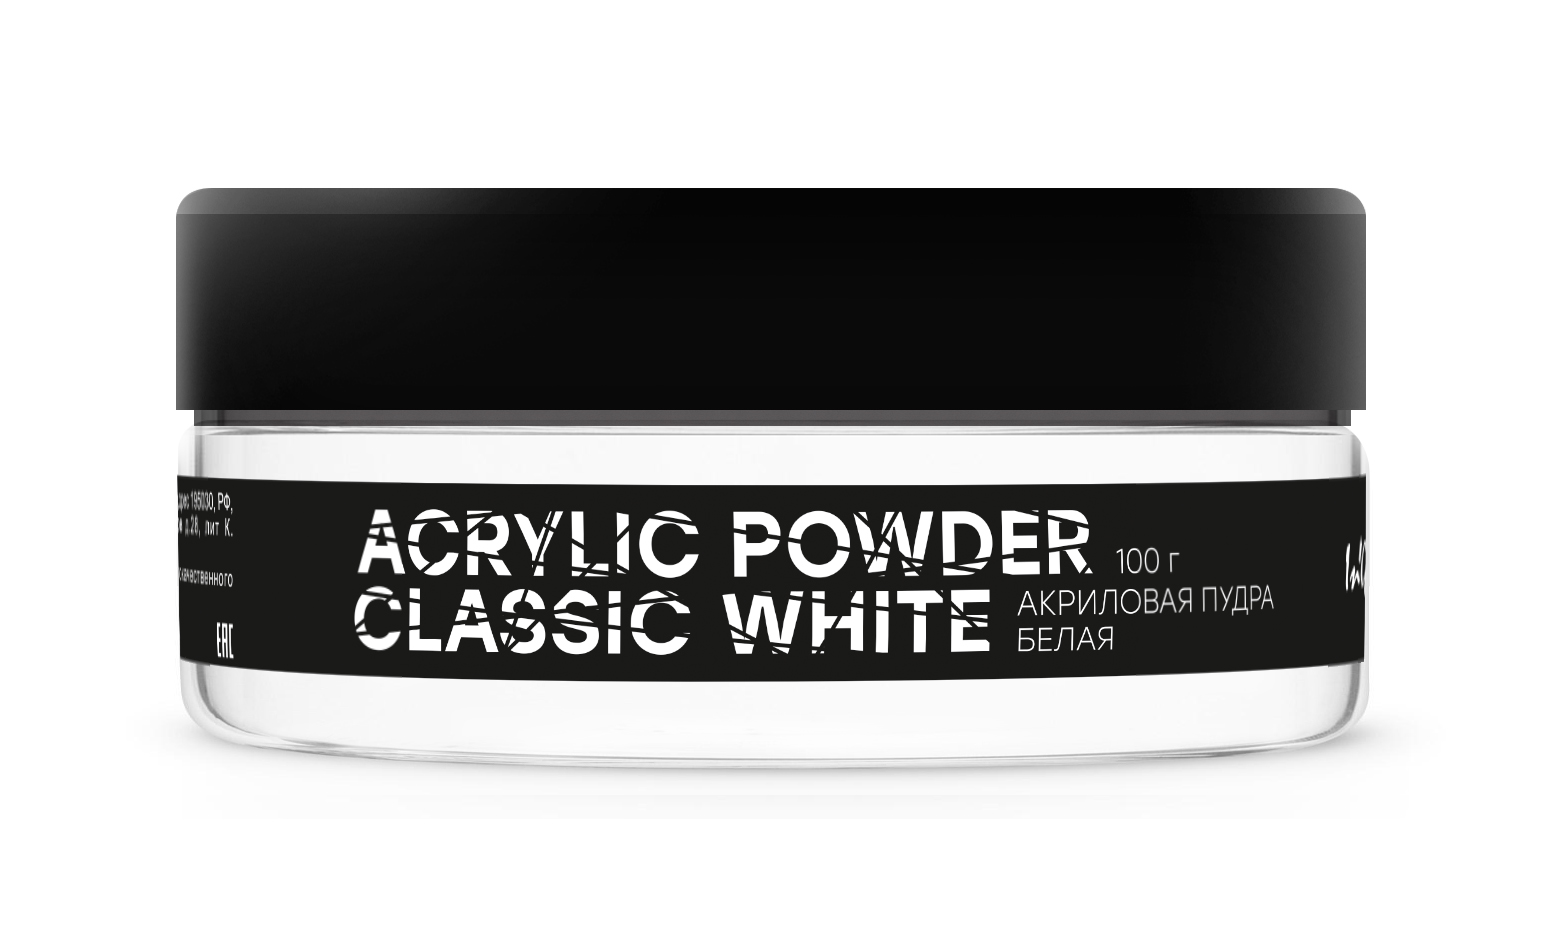 Акриловая пудра белая Acrylic Powder Classic White, 100 г